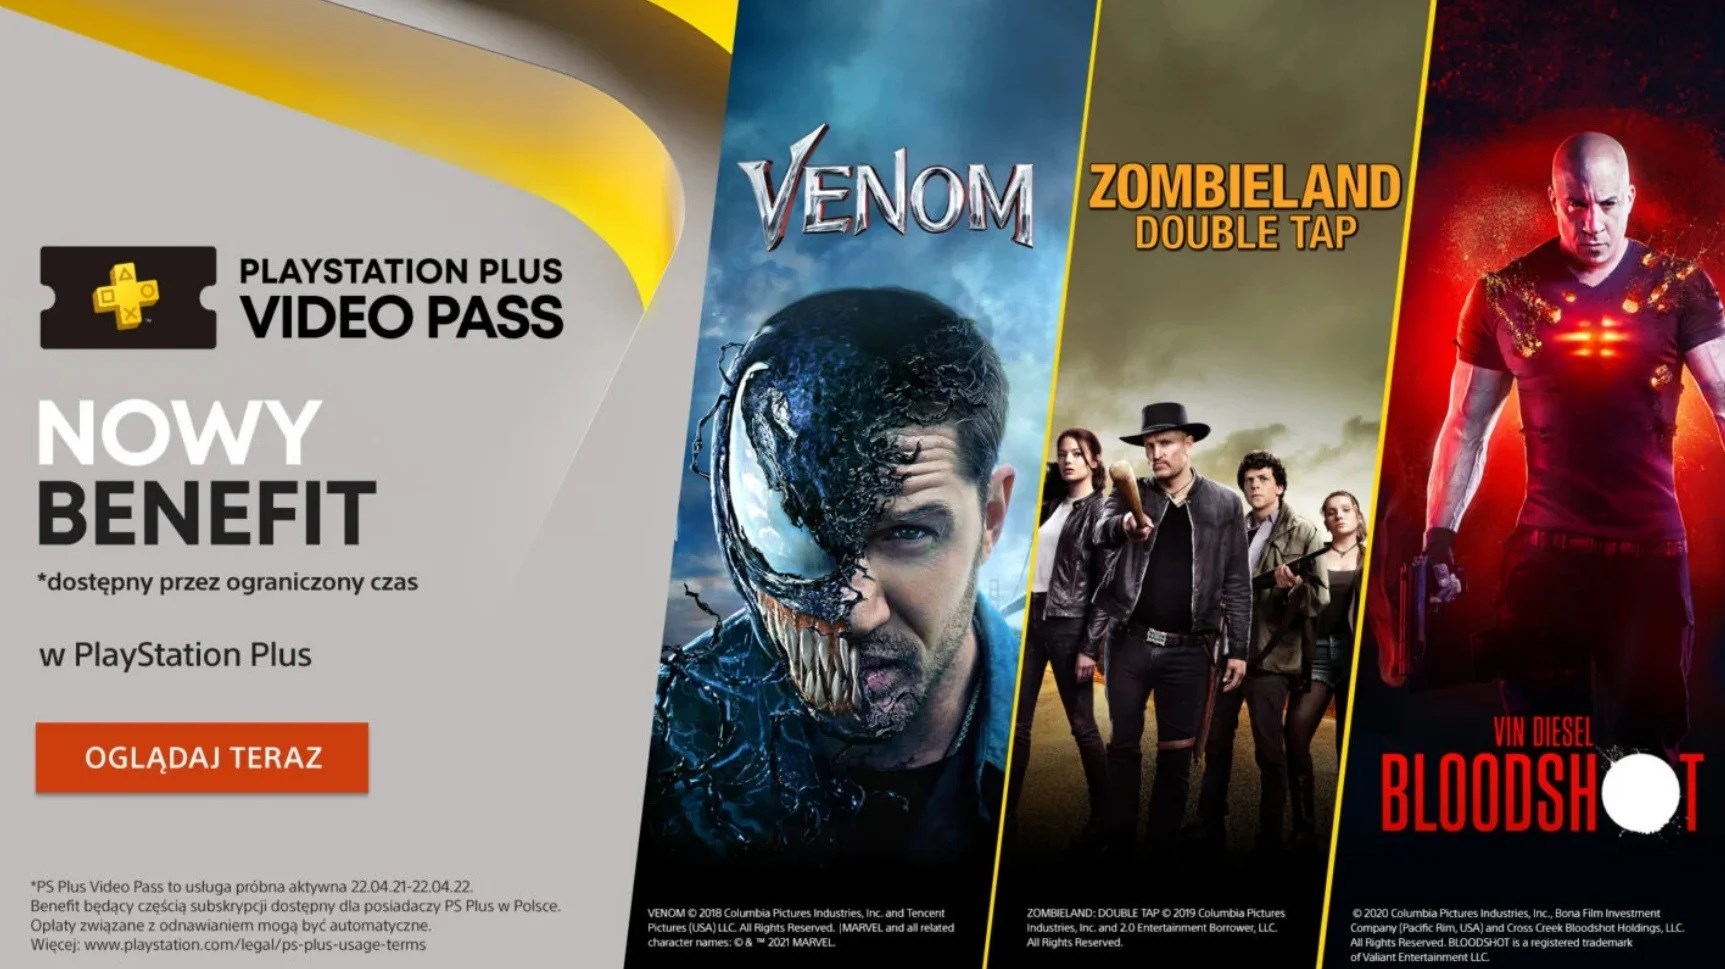 PS Plus Video Pass duyuruldu: PS Plus'a ek ücret olmadan filmler ve diziler eklenecek